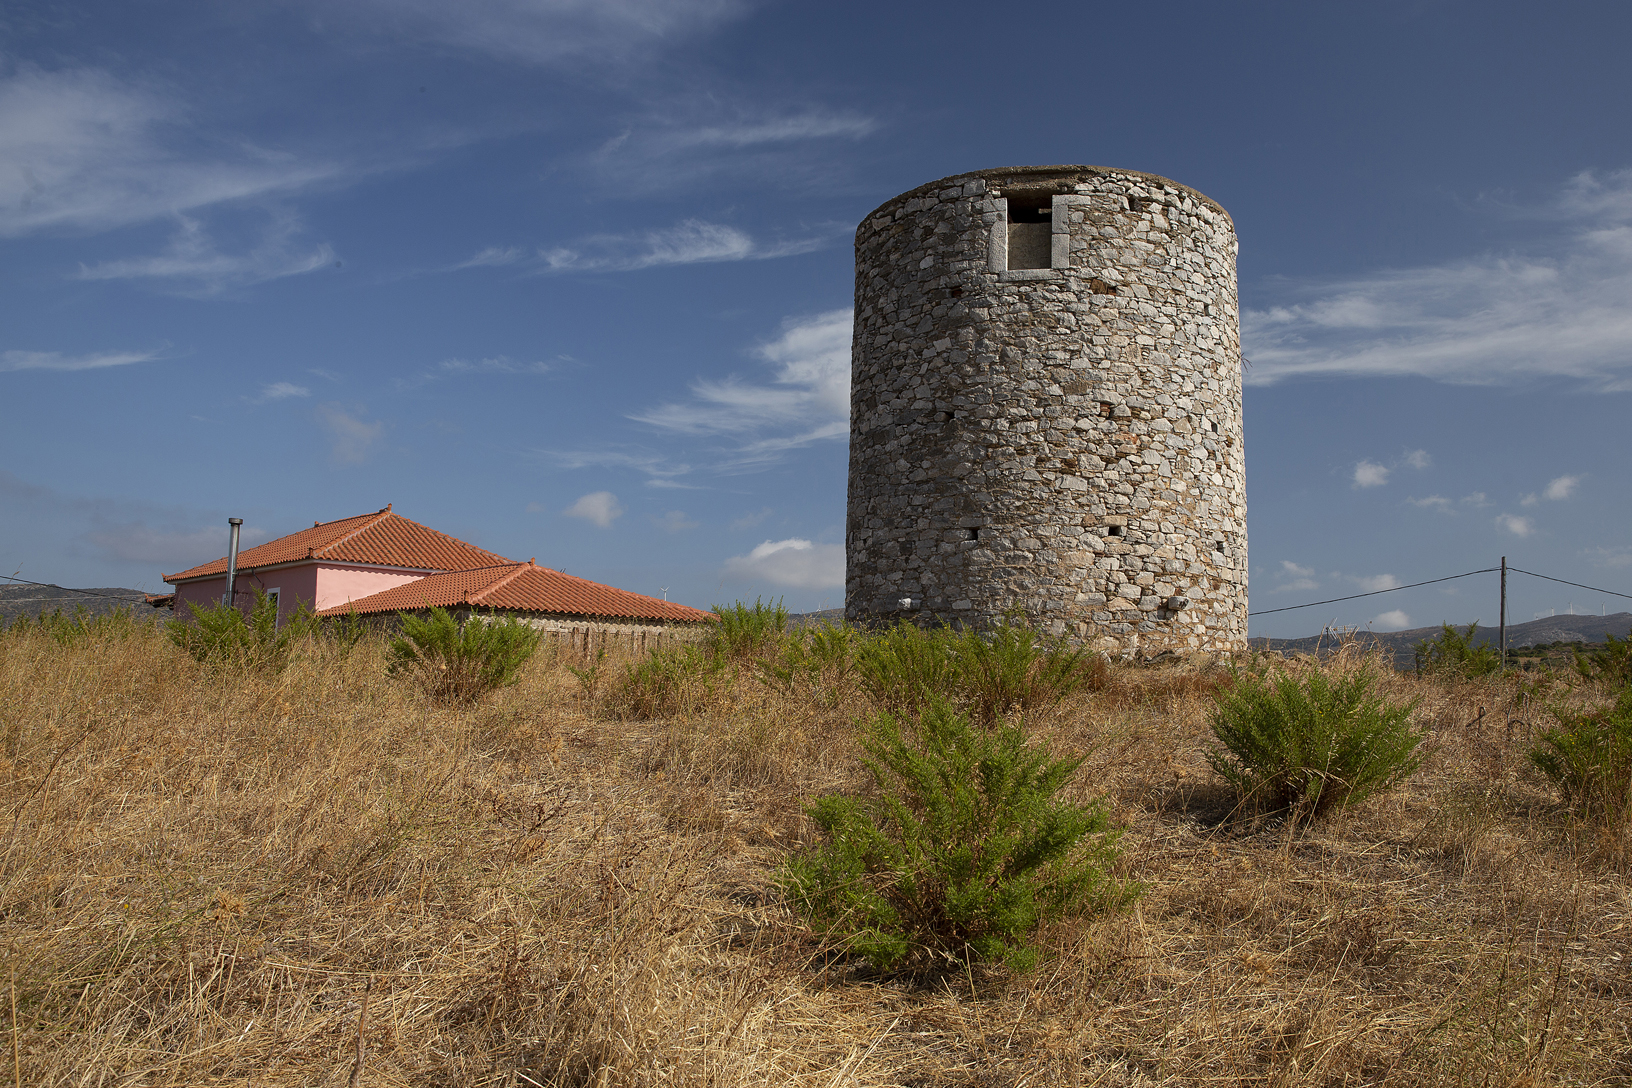 Ανεμόμυλος στο κέντρο του χωριού Ζάρακες. Φωτογραφία: ©Βασίλης Συκάς, για τον Δήμο Κύμης-Αλιβερίου